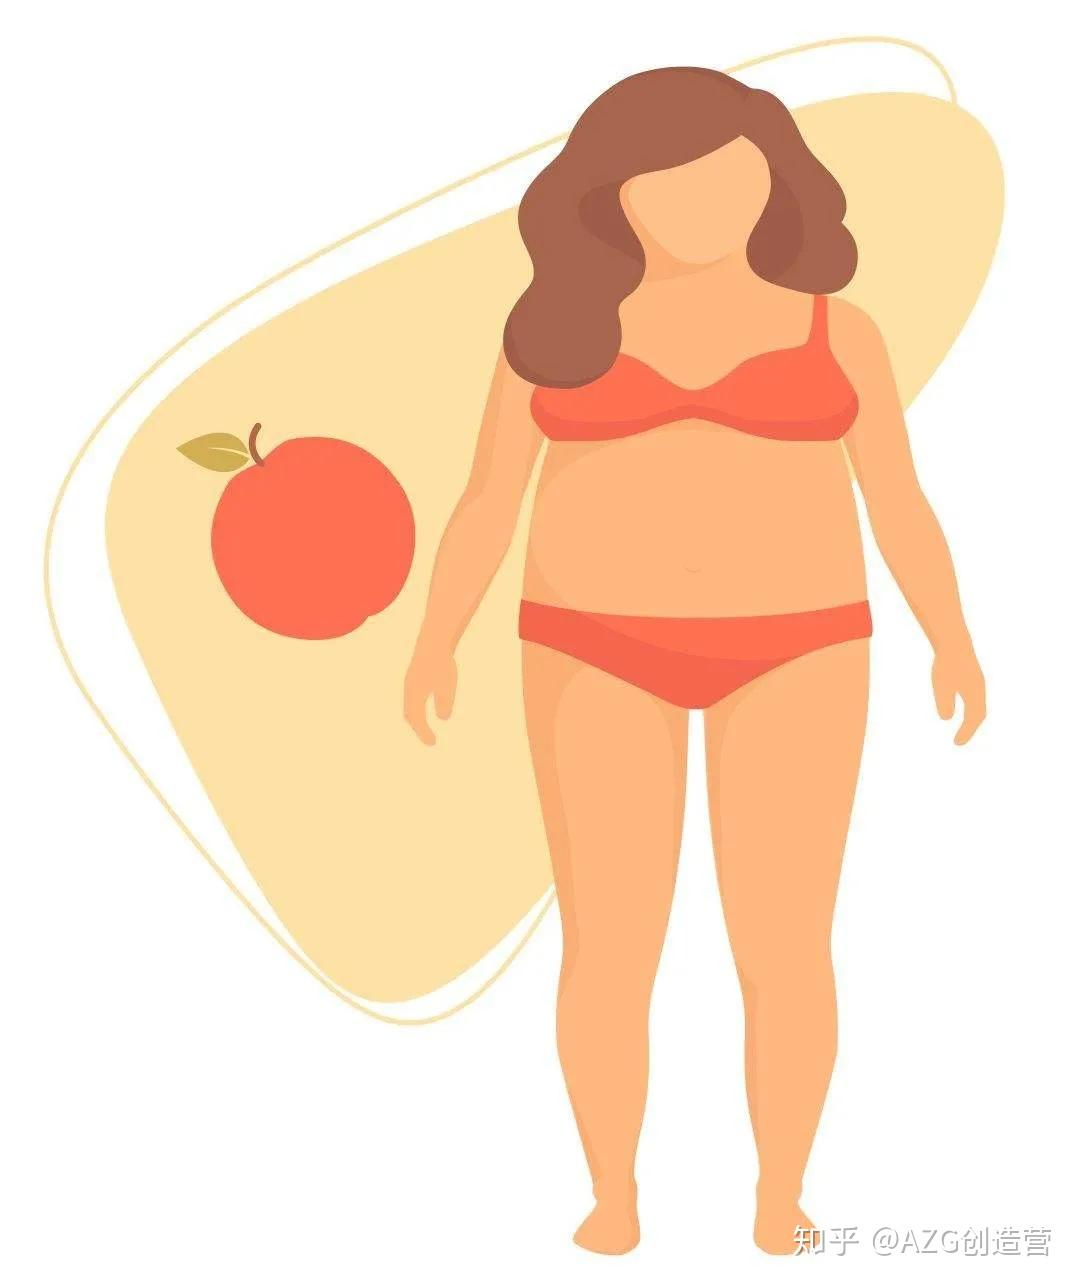 营养师专栏你为什么四肢不胖但看起来很胖可能是内脏脂肪偏多